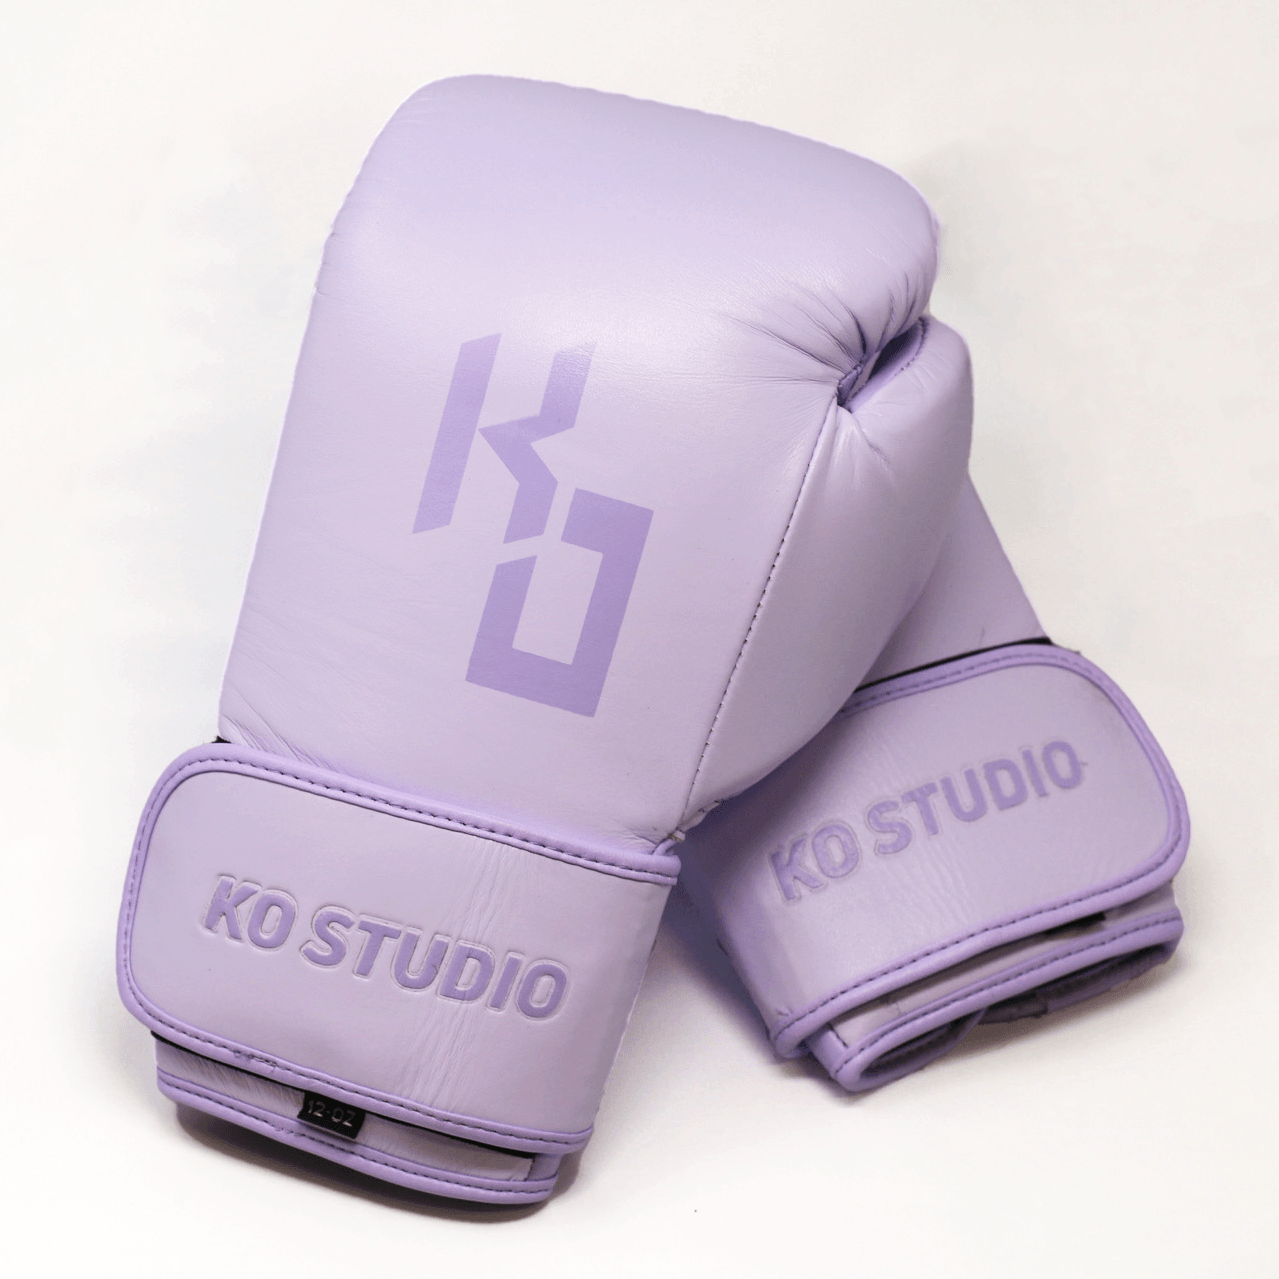 Lavender Boxing Gloves - KoStudio.co